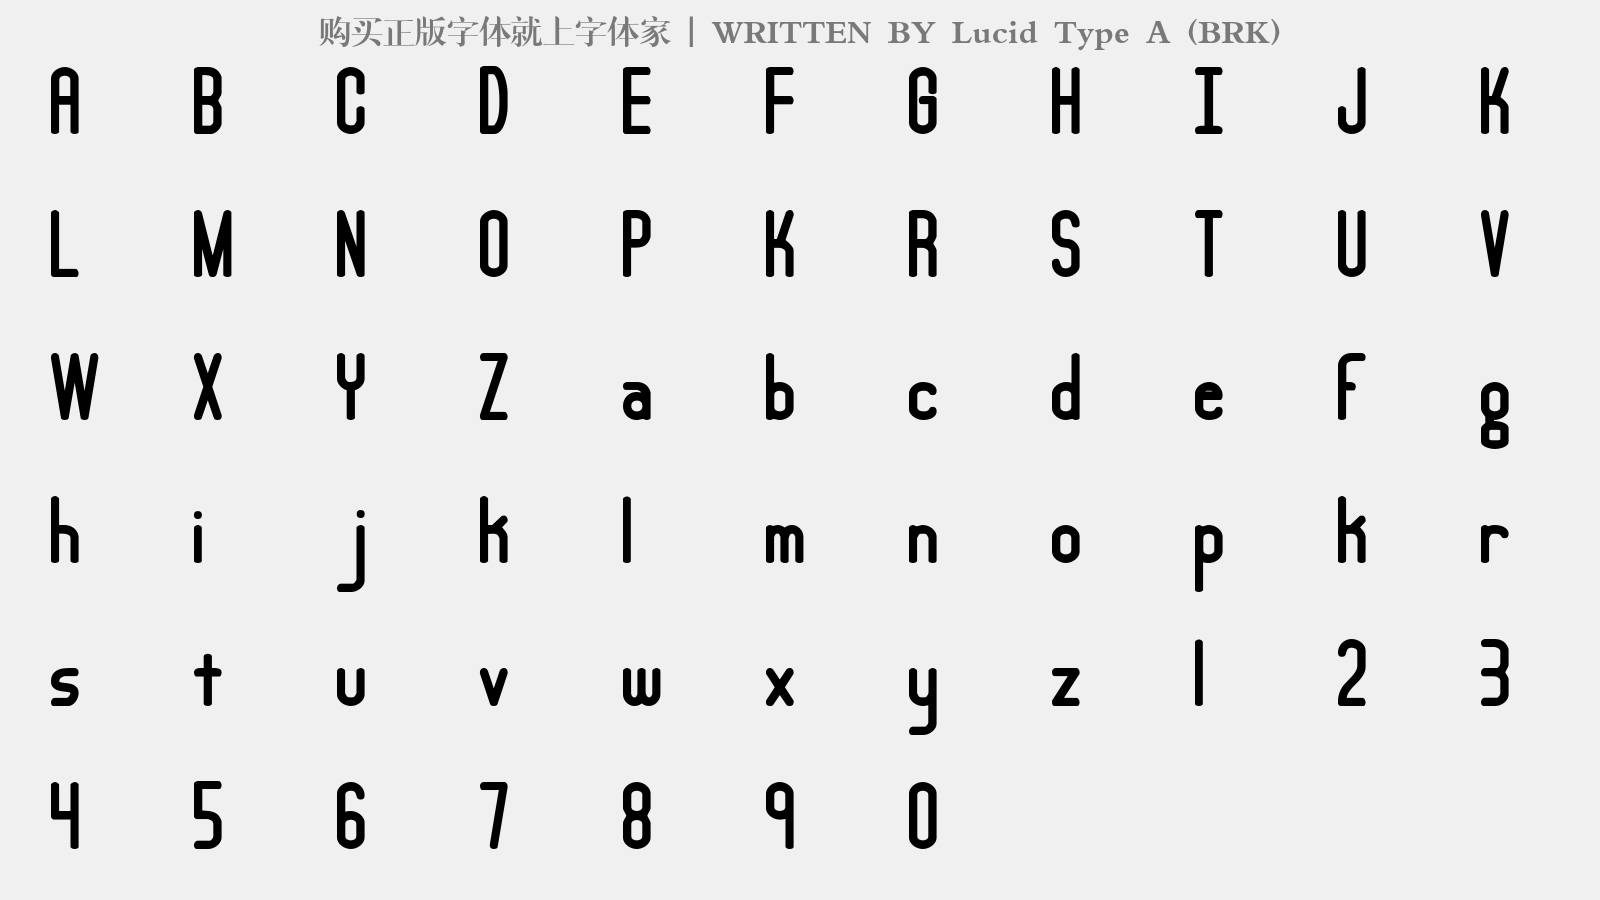 Lucid Type A (BRK) - 大写字母/小写字母/数字